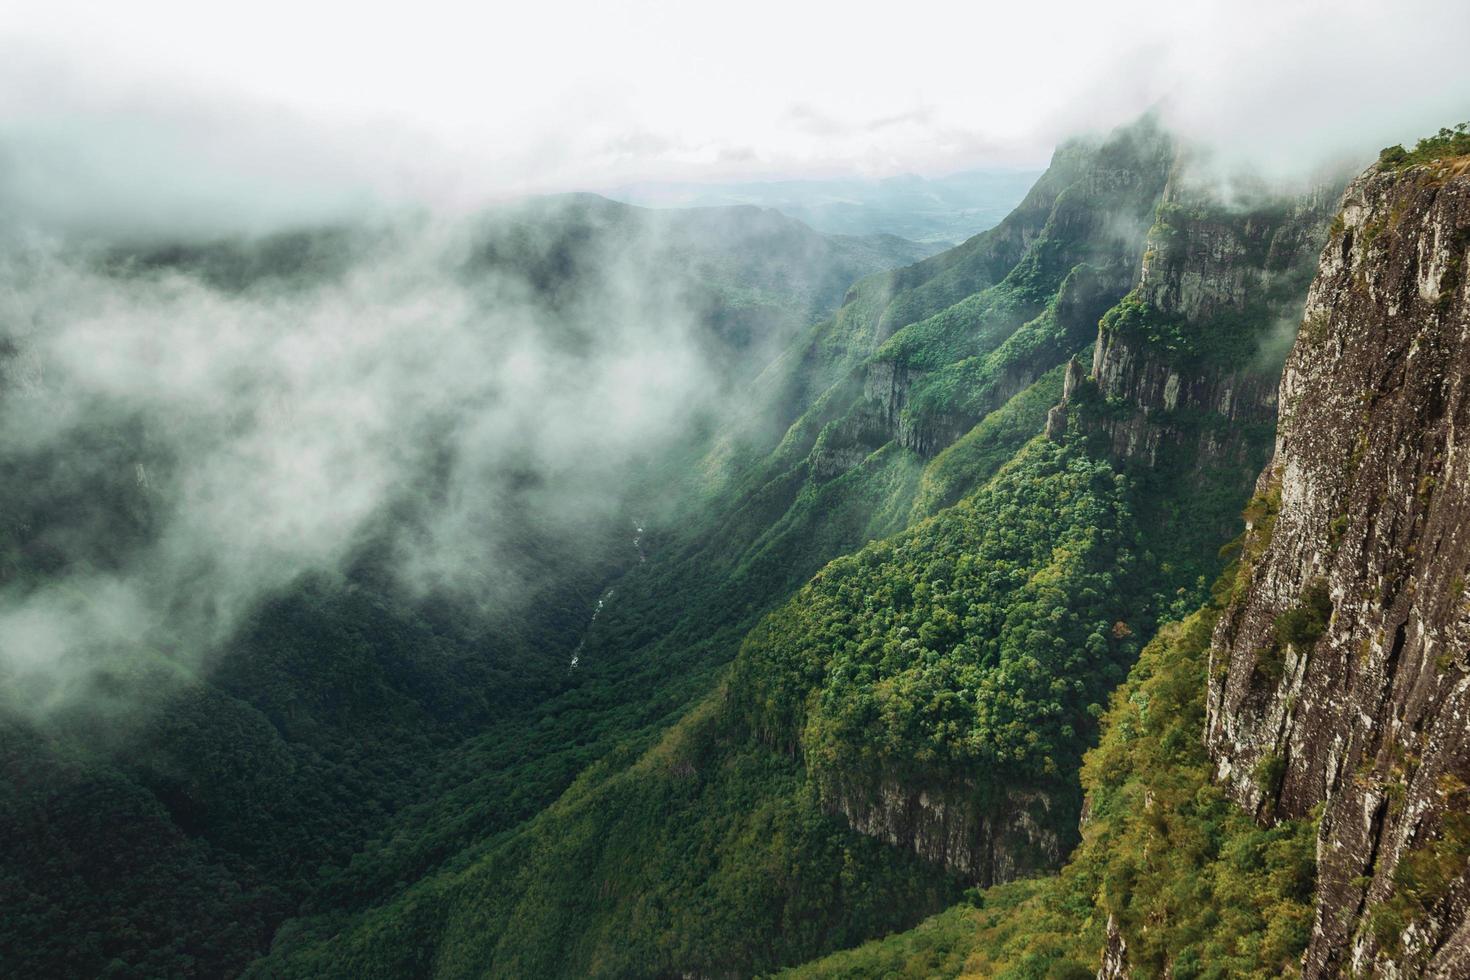 immense canyon de fortaleza avec des falaises rocheuses abruptes couvertes d'une épaisse forêt par temps nuageux près de cambara do sul. une petite ville de campagne dans le sud du brésil avec des attractions touristiques naturelles étonnantes. photo